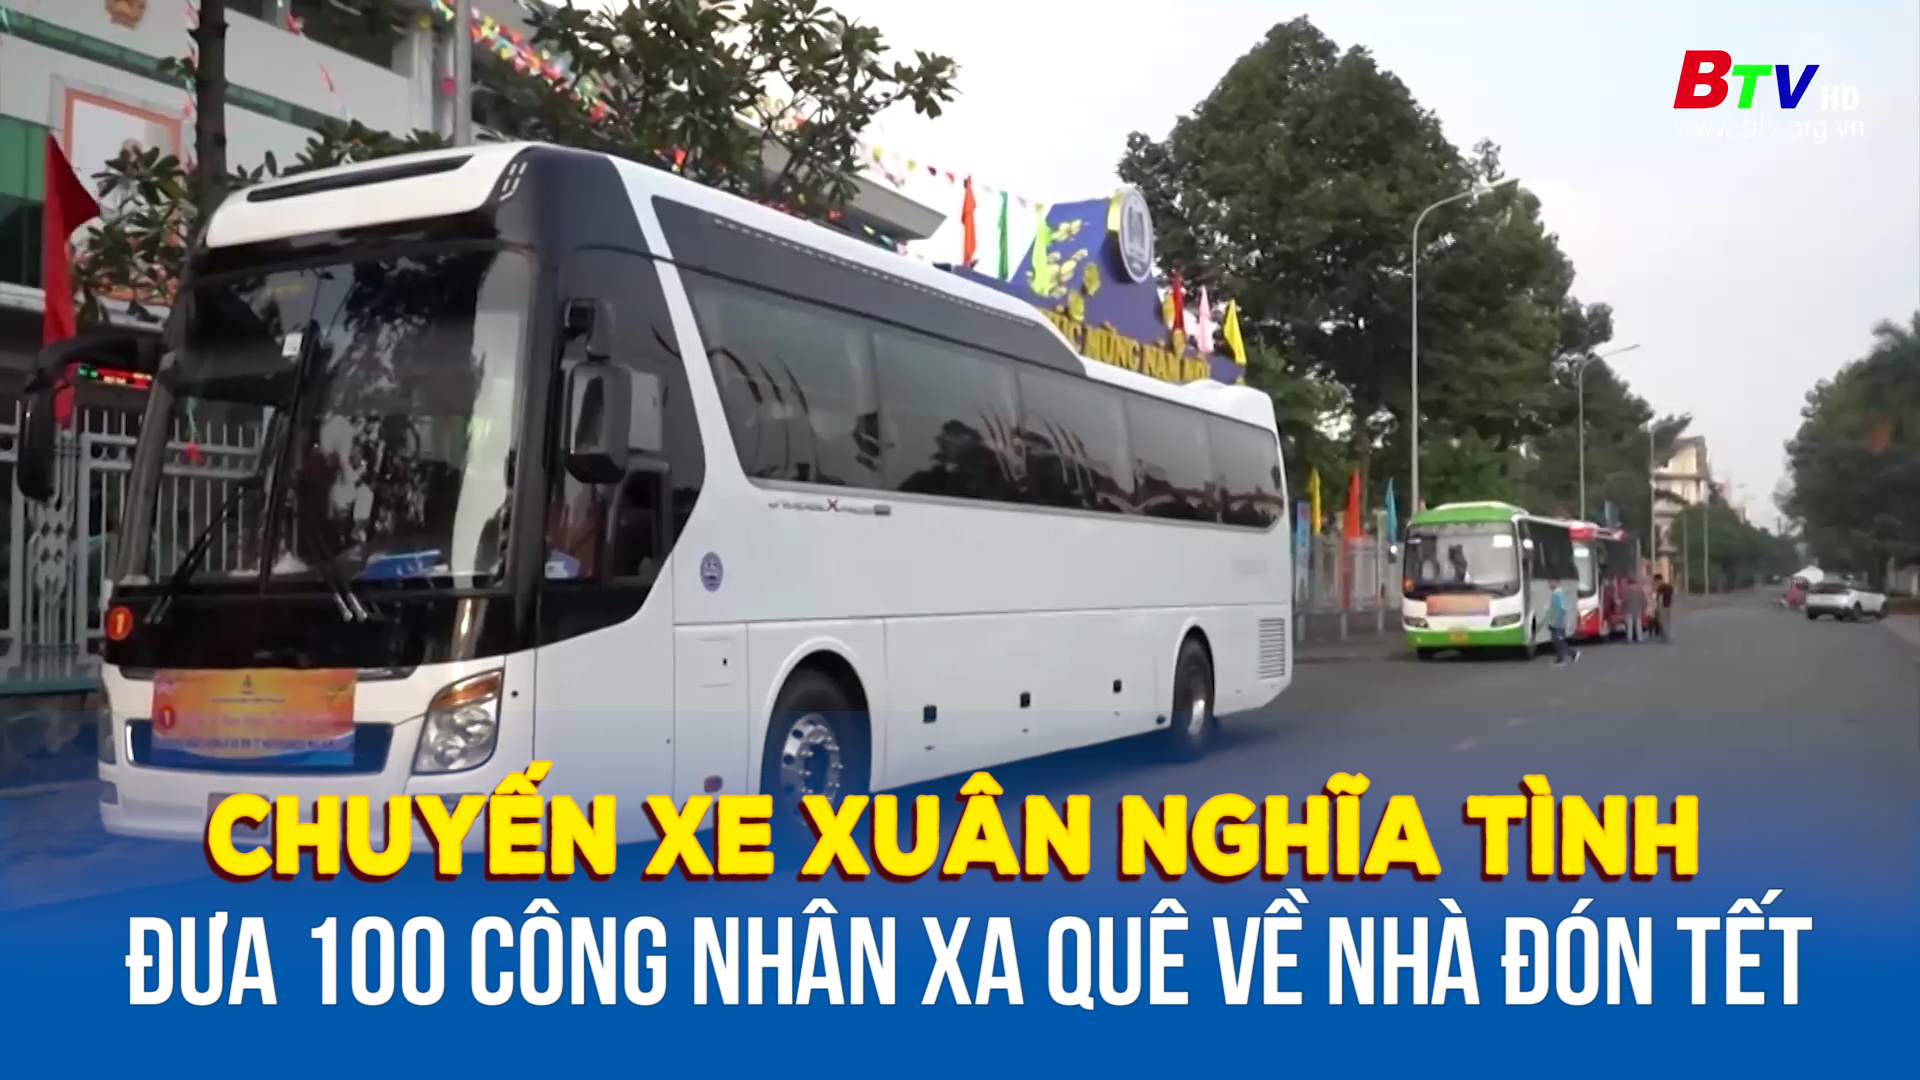 Chuyến xe xuân nghĩa tình đưa 100 công nhân xa quê về nhà đón Tết